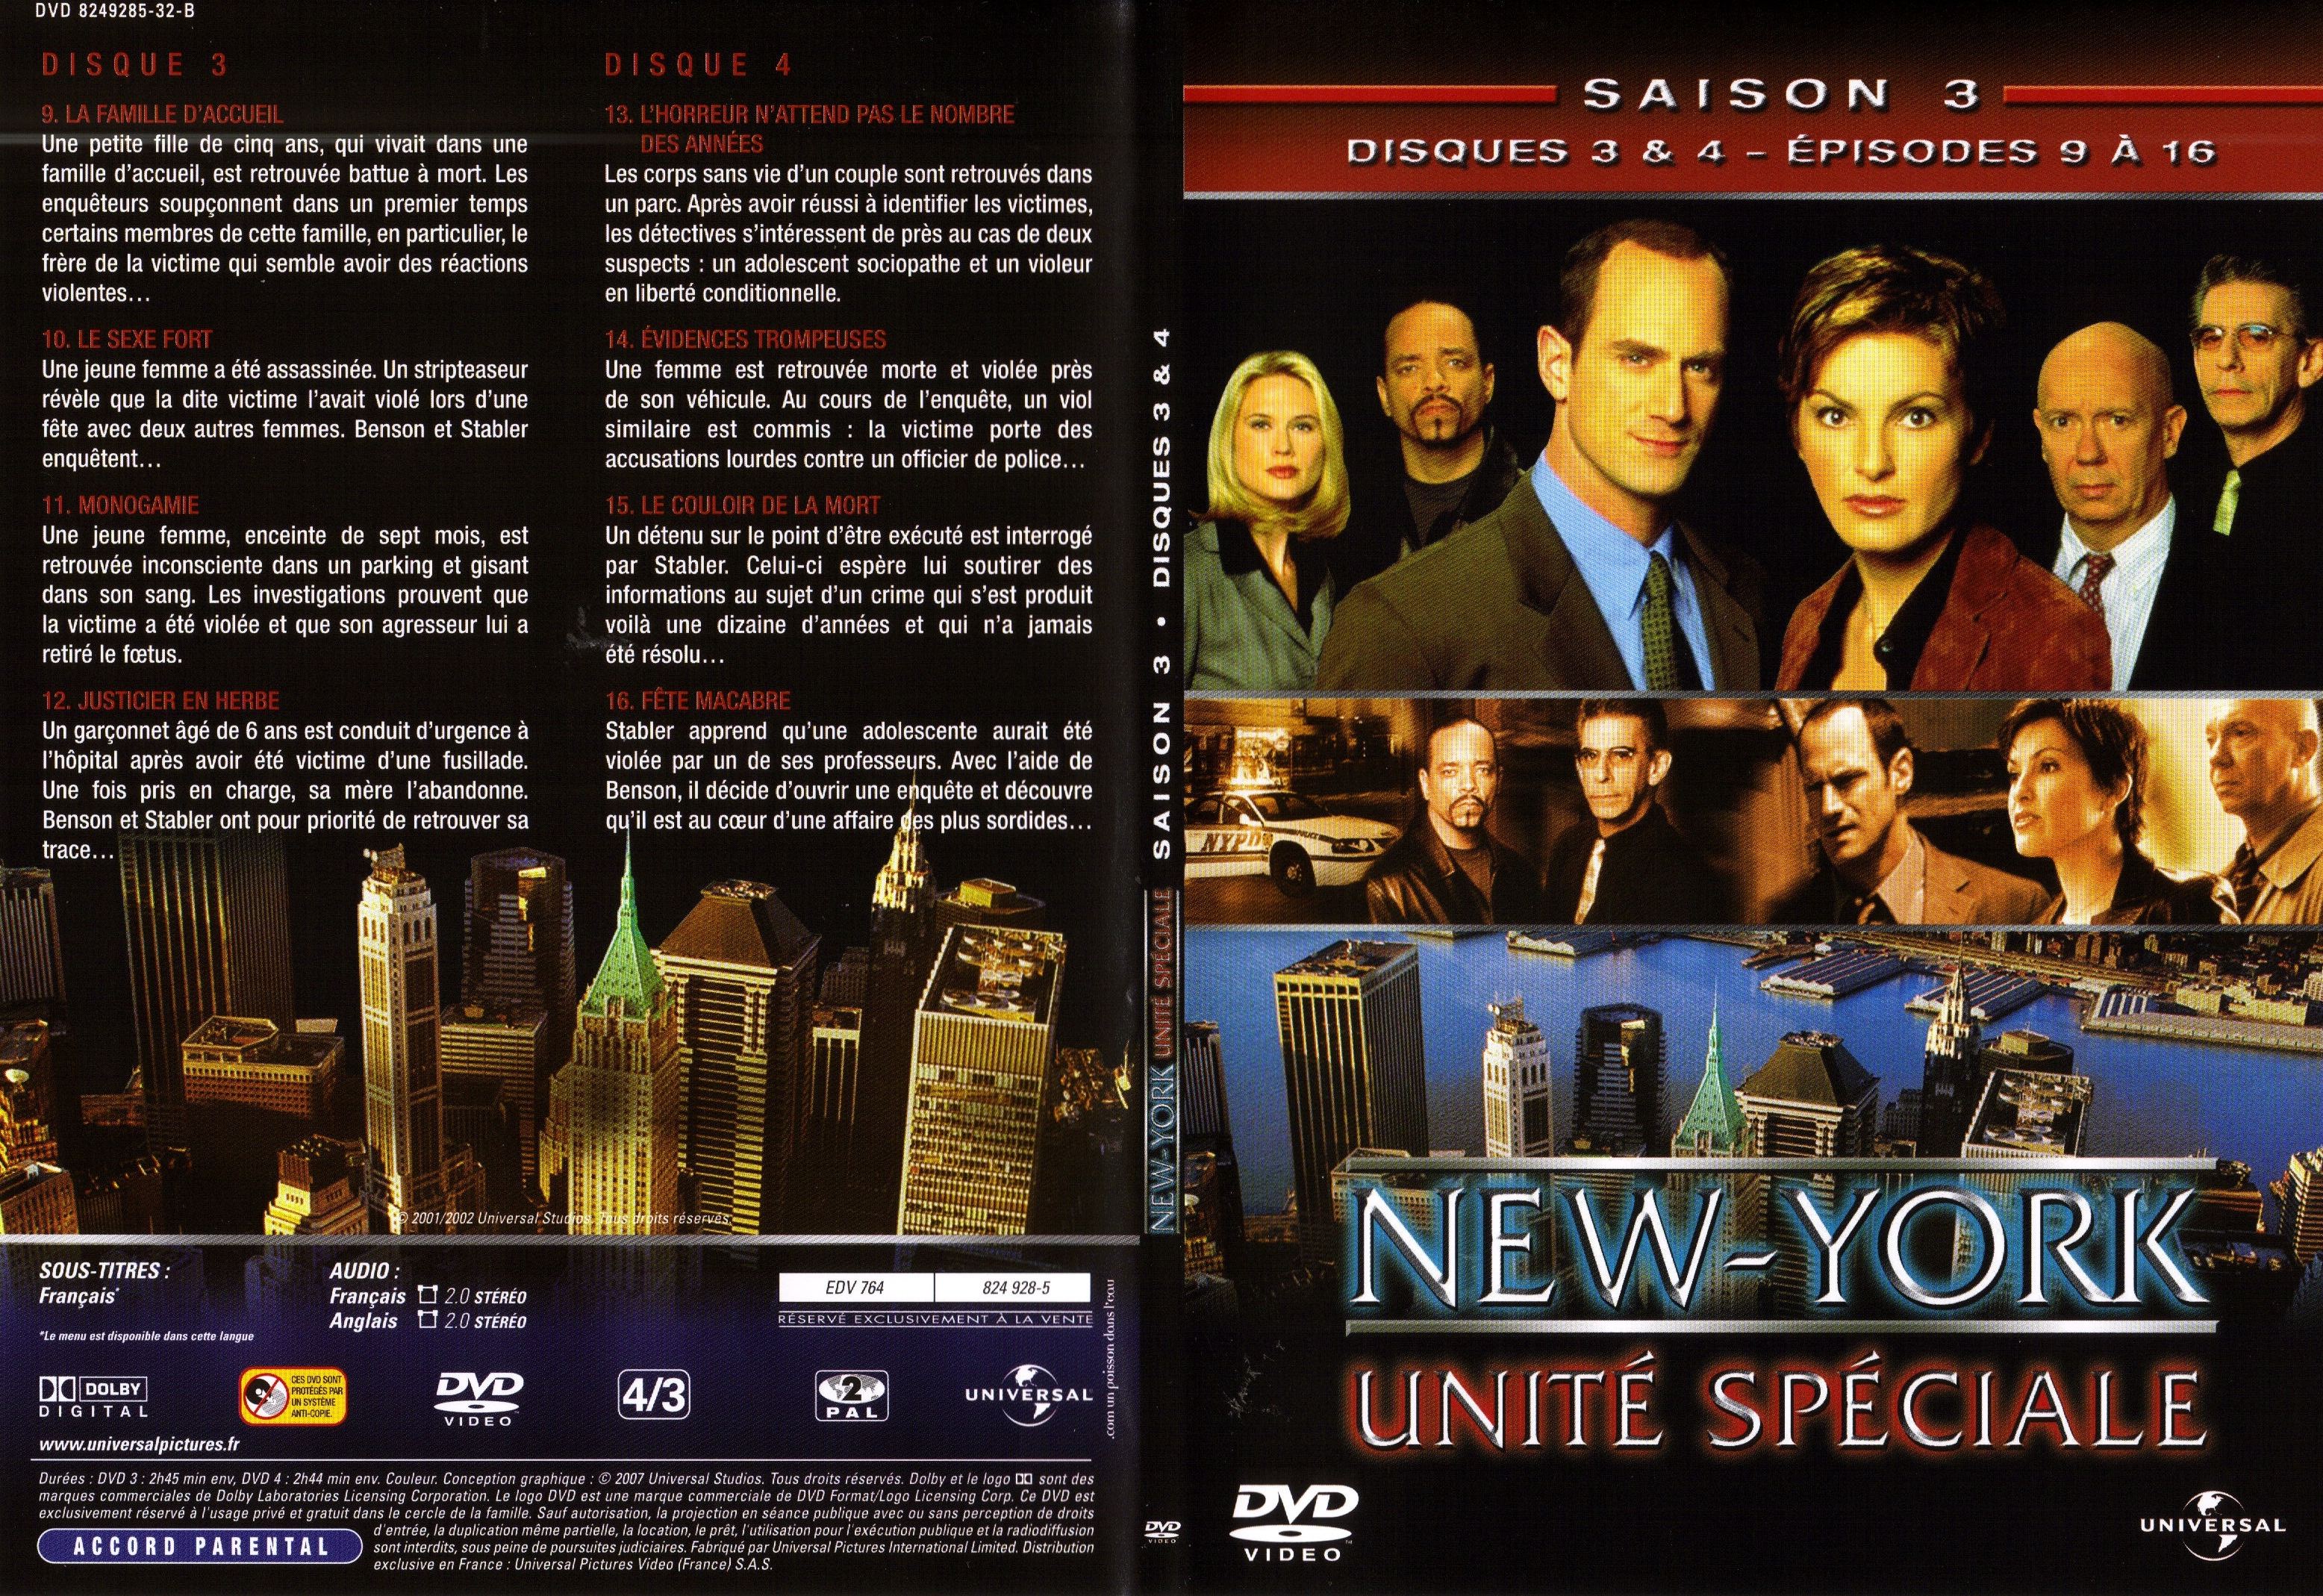 Jaquette DVD New York unit spciale saison 3 DVD 2